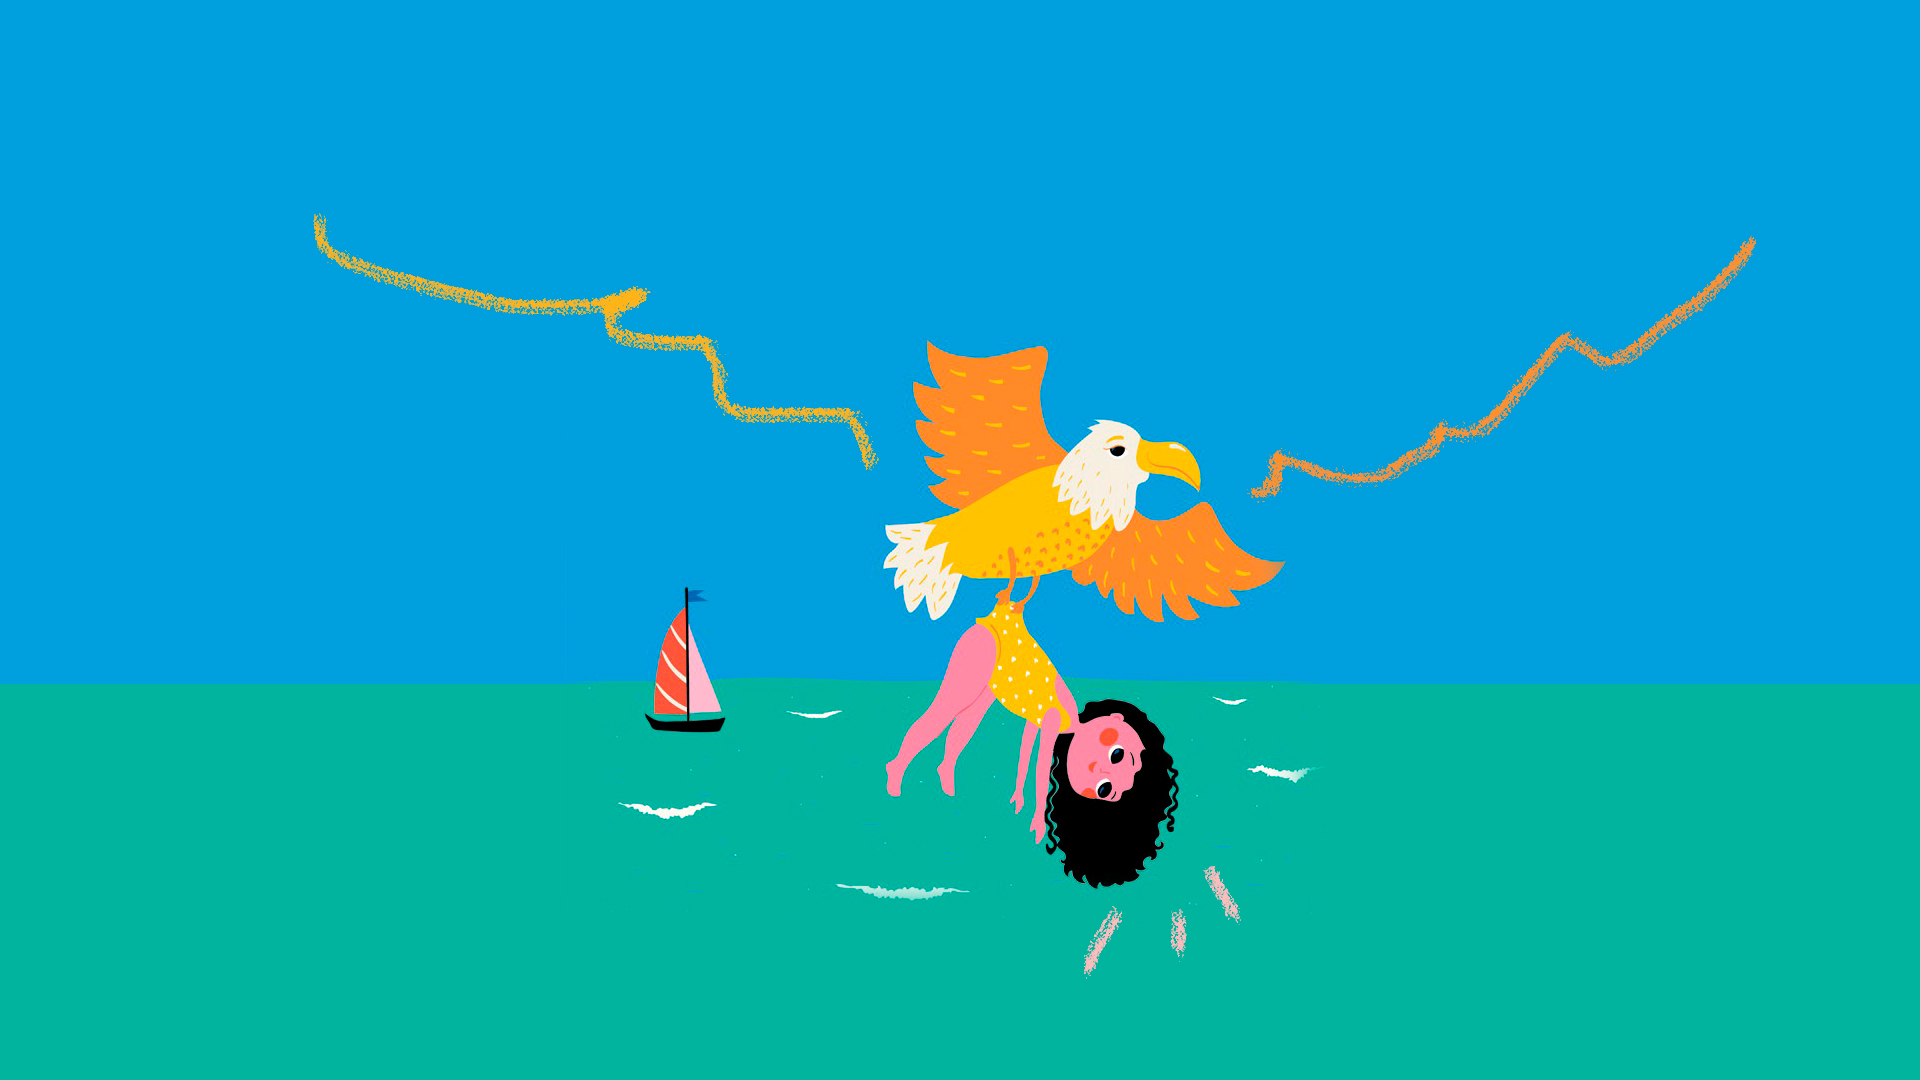 Ilustração do livro "A minha mãe vira bicho", de Ana Castro, lançado pela editora Matrescência. Uma menina morena é resgatada por uma águia na praia. Ao fundo, há um barquinho.